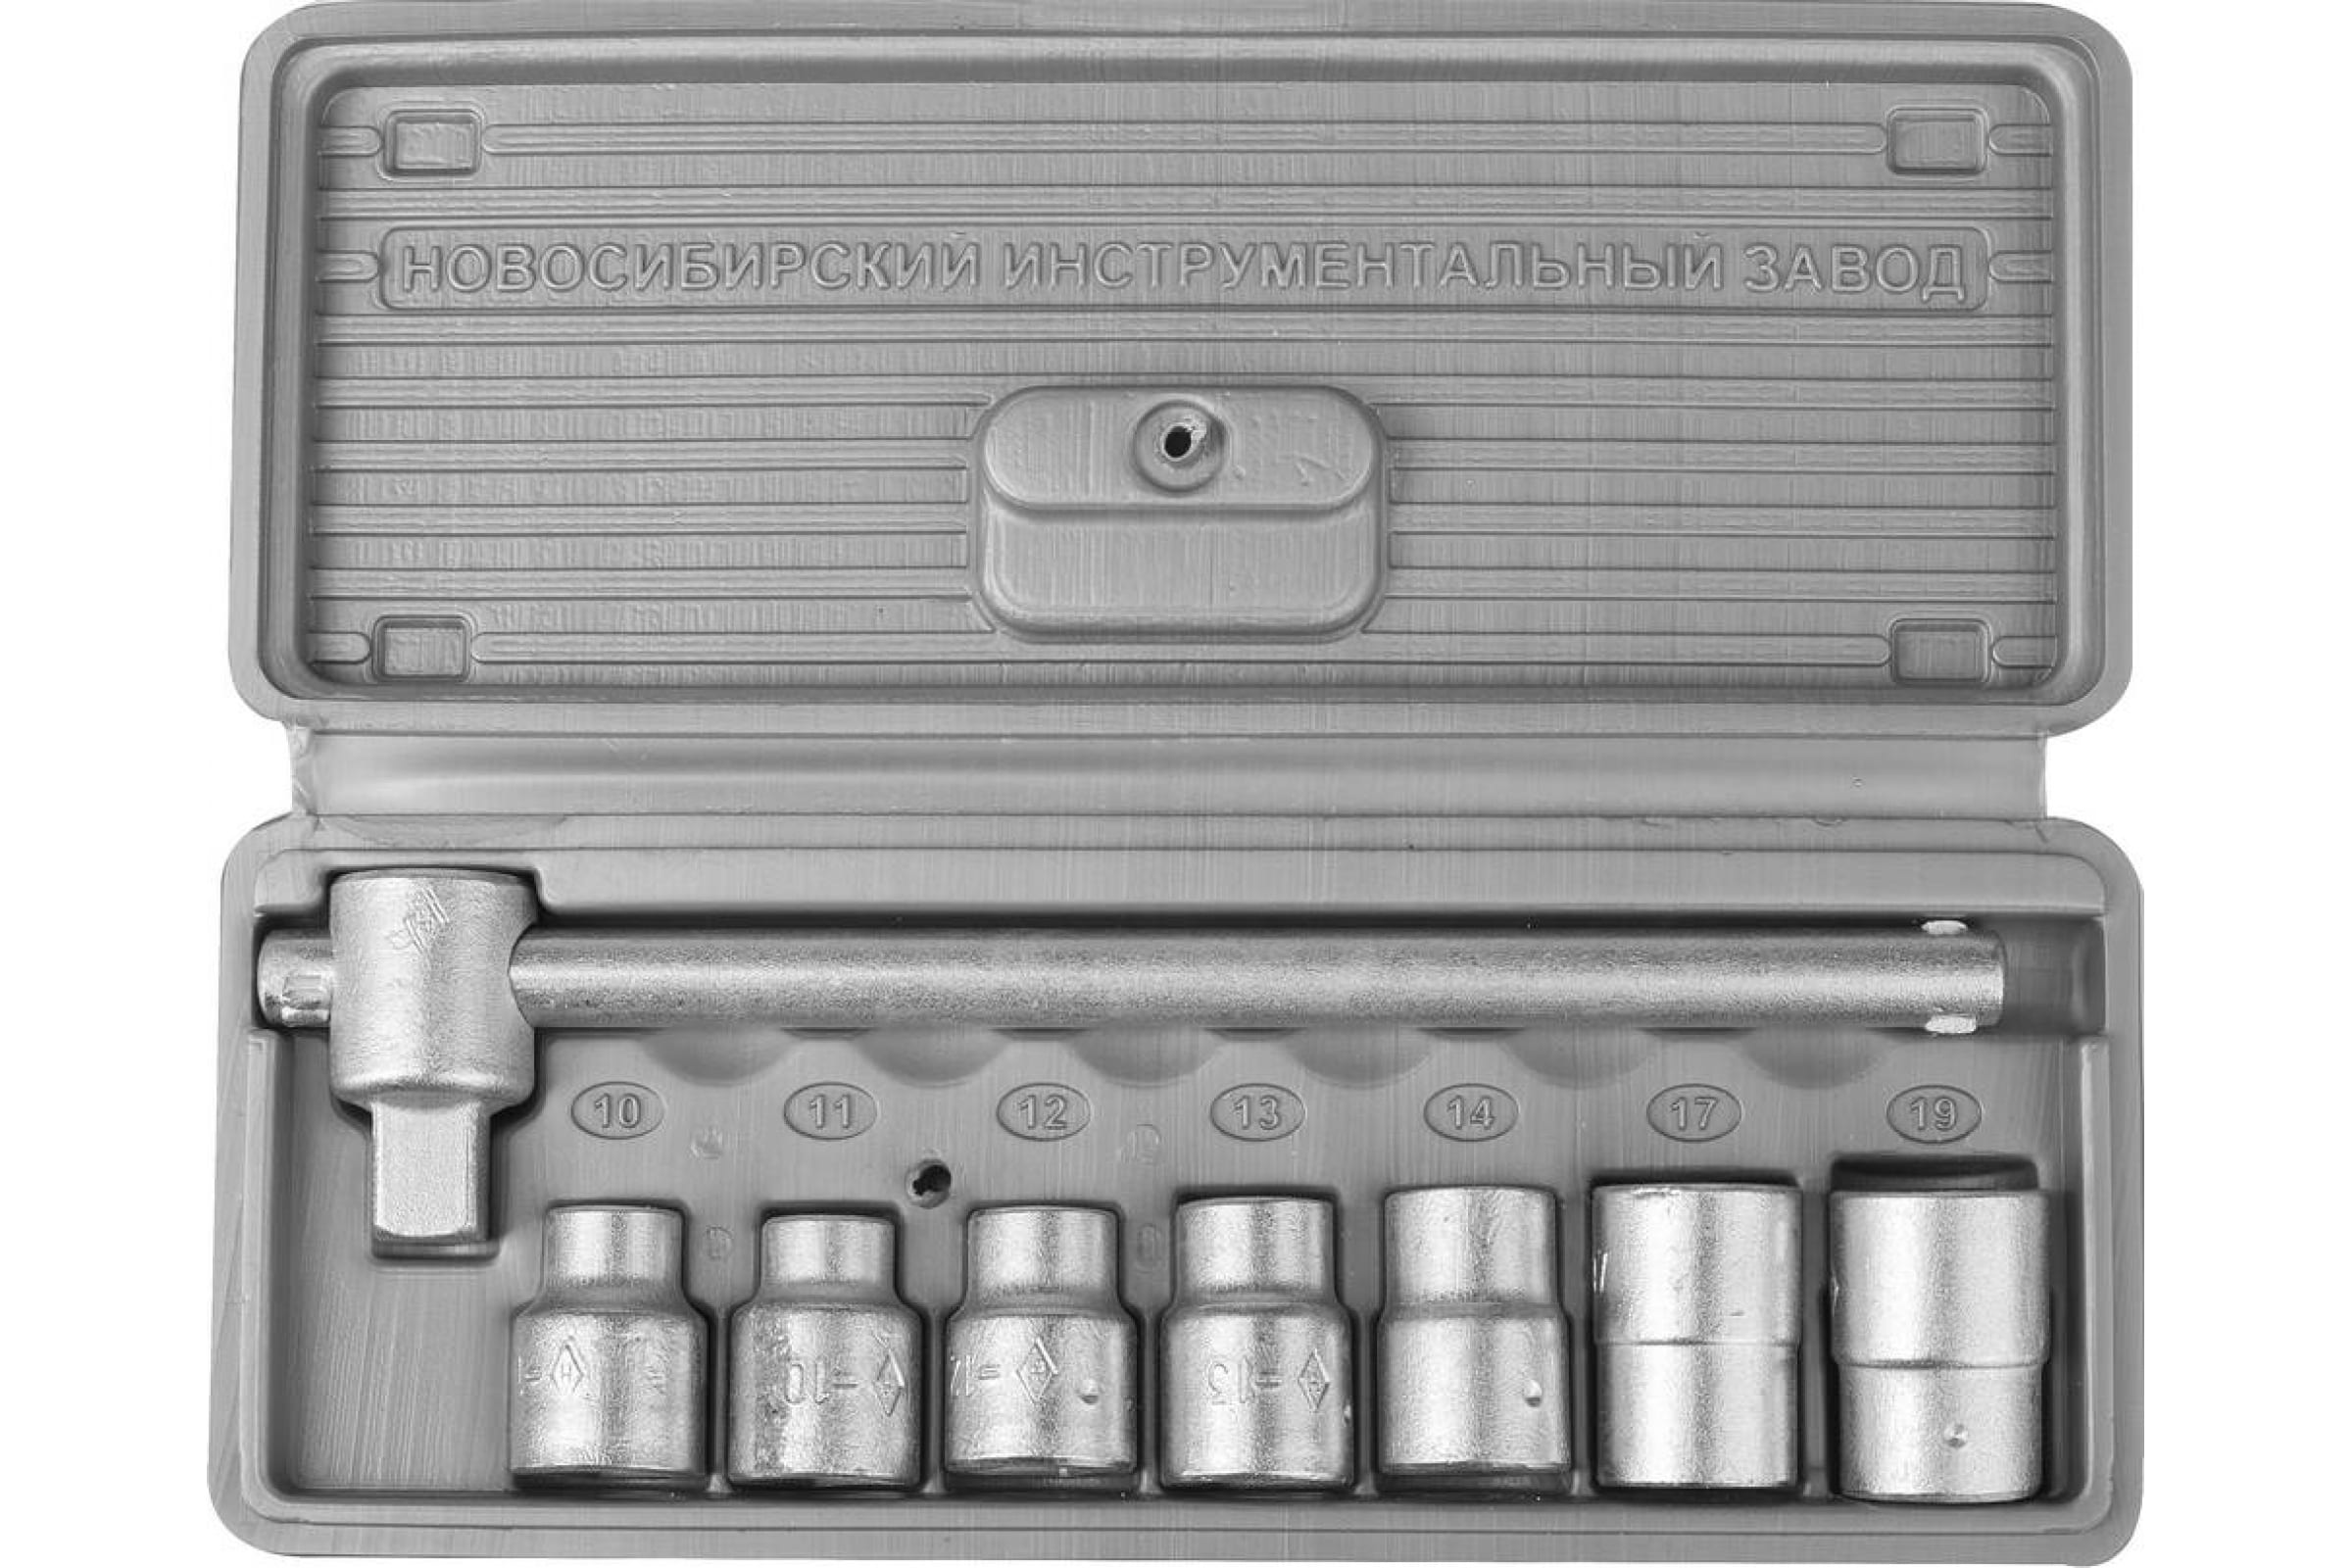 Набор головок НИЗ Шоферский инструмент №1, предметов в наборе: 8 шт., пластиковый кейс (2761-10)